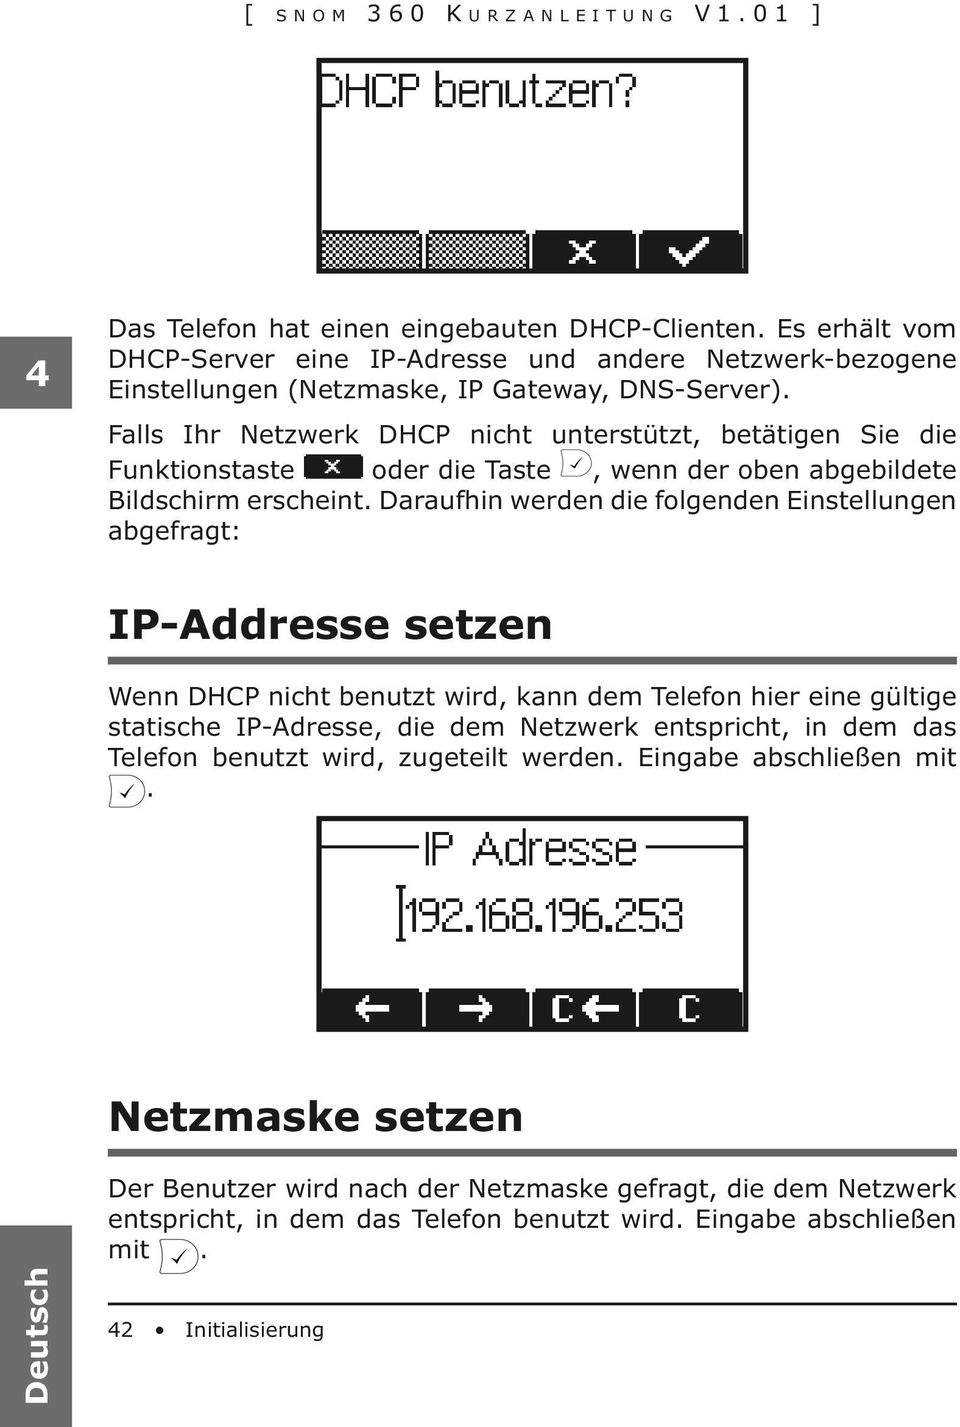 Falls Ihr Netzwerk DHCP nicht unterstützt, betätigen Sie die Funktionstaste oder die Taste, wenn der oben abgebildete Bildschirm erscheint.